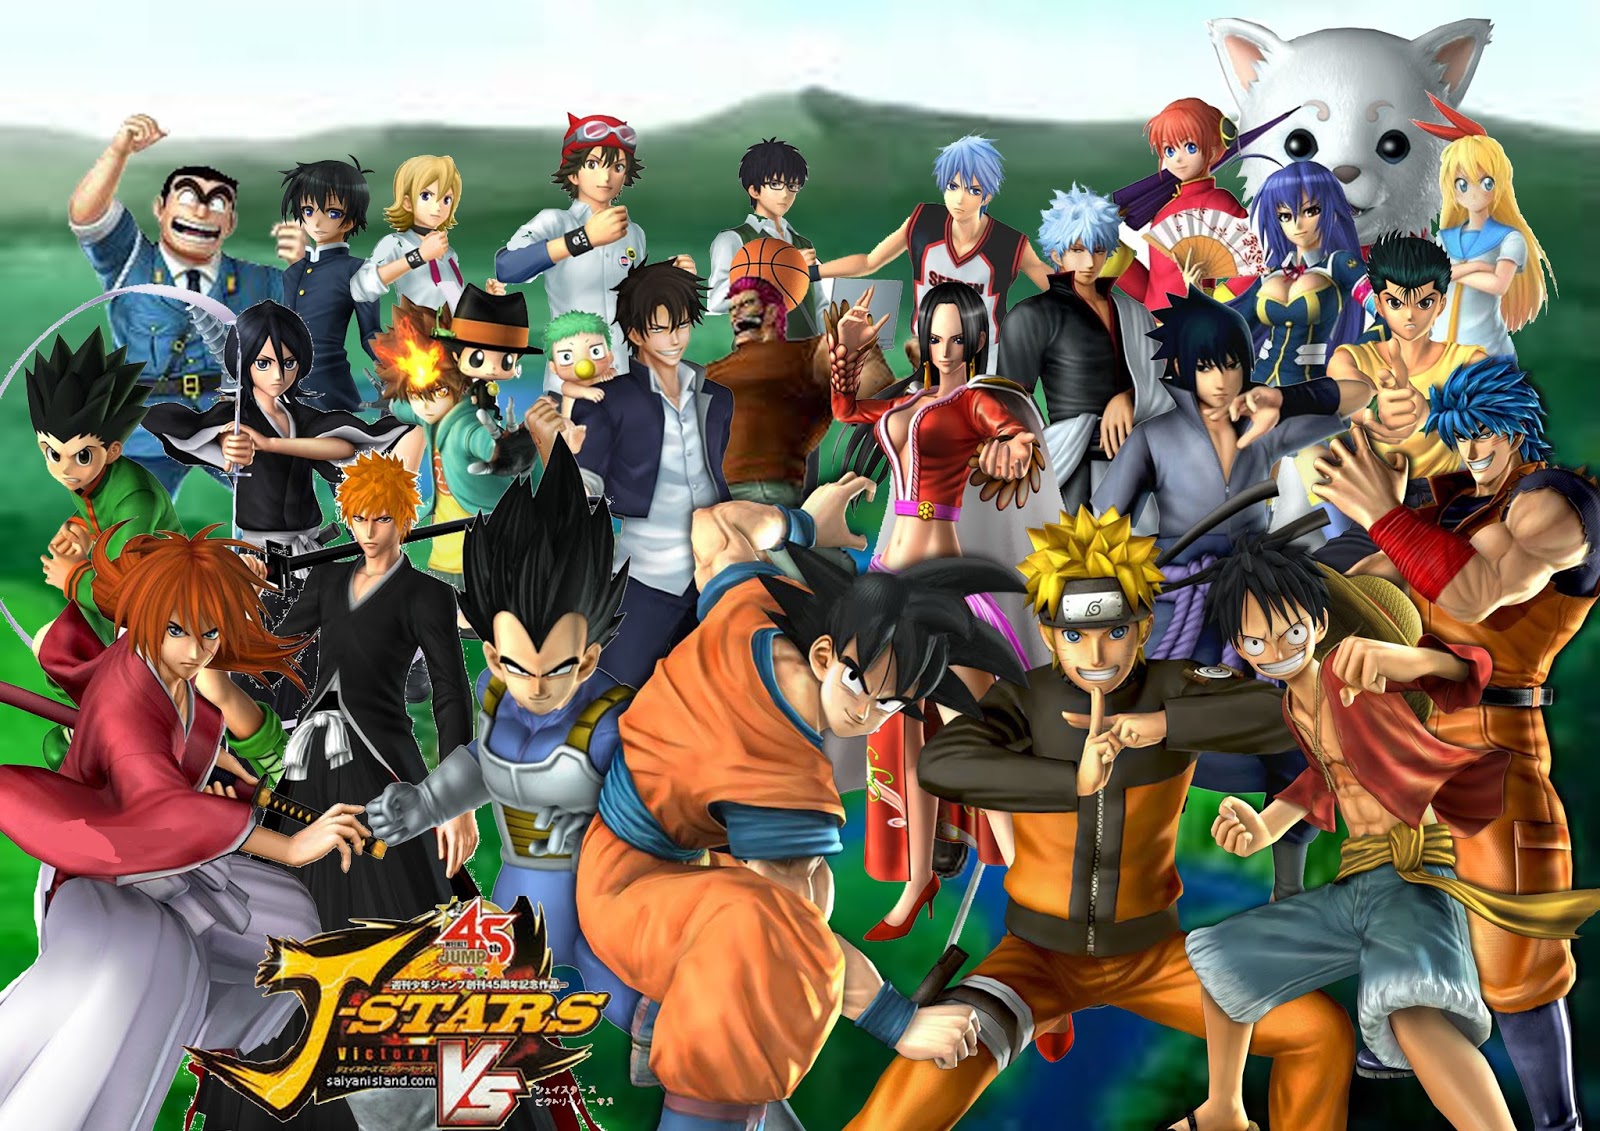 FOUR PLAY GAMES: Novo jogo de luta com vários personagens clássicos juntos.